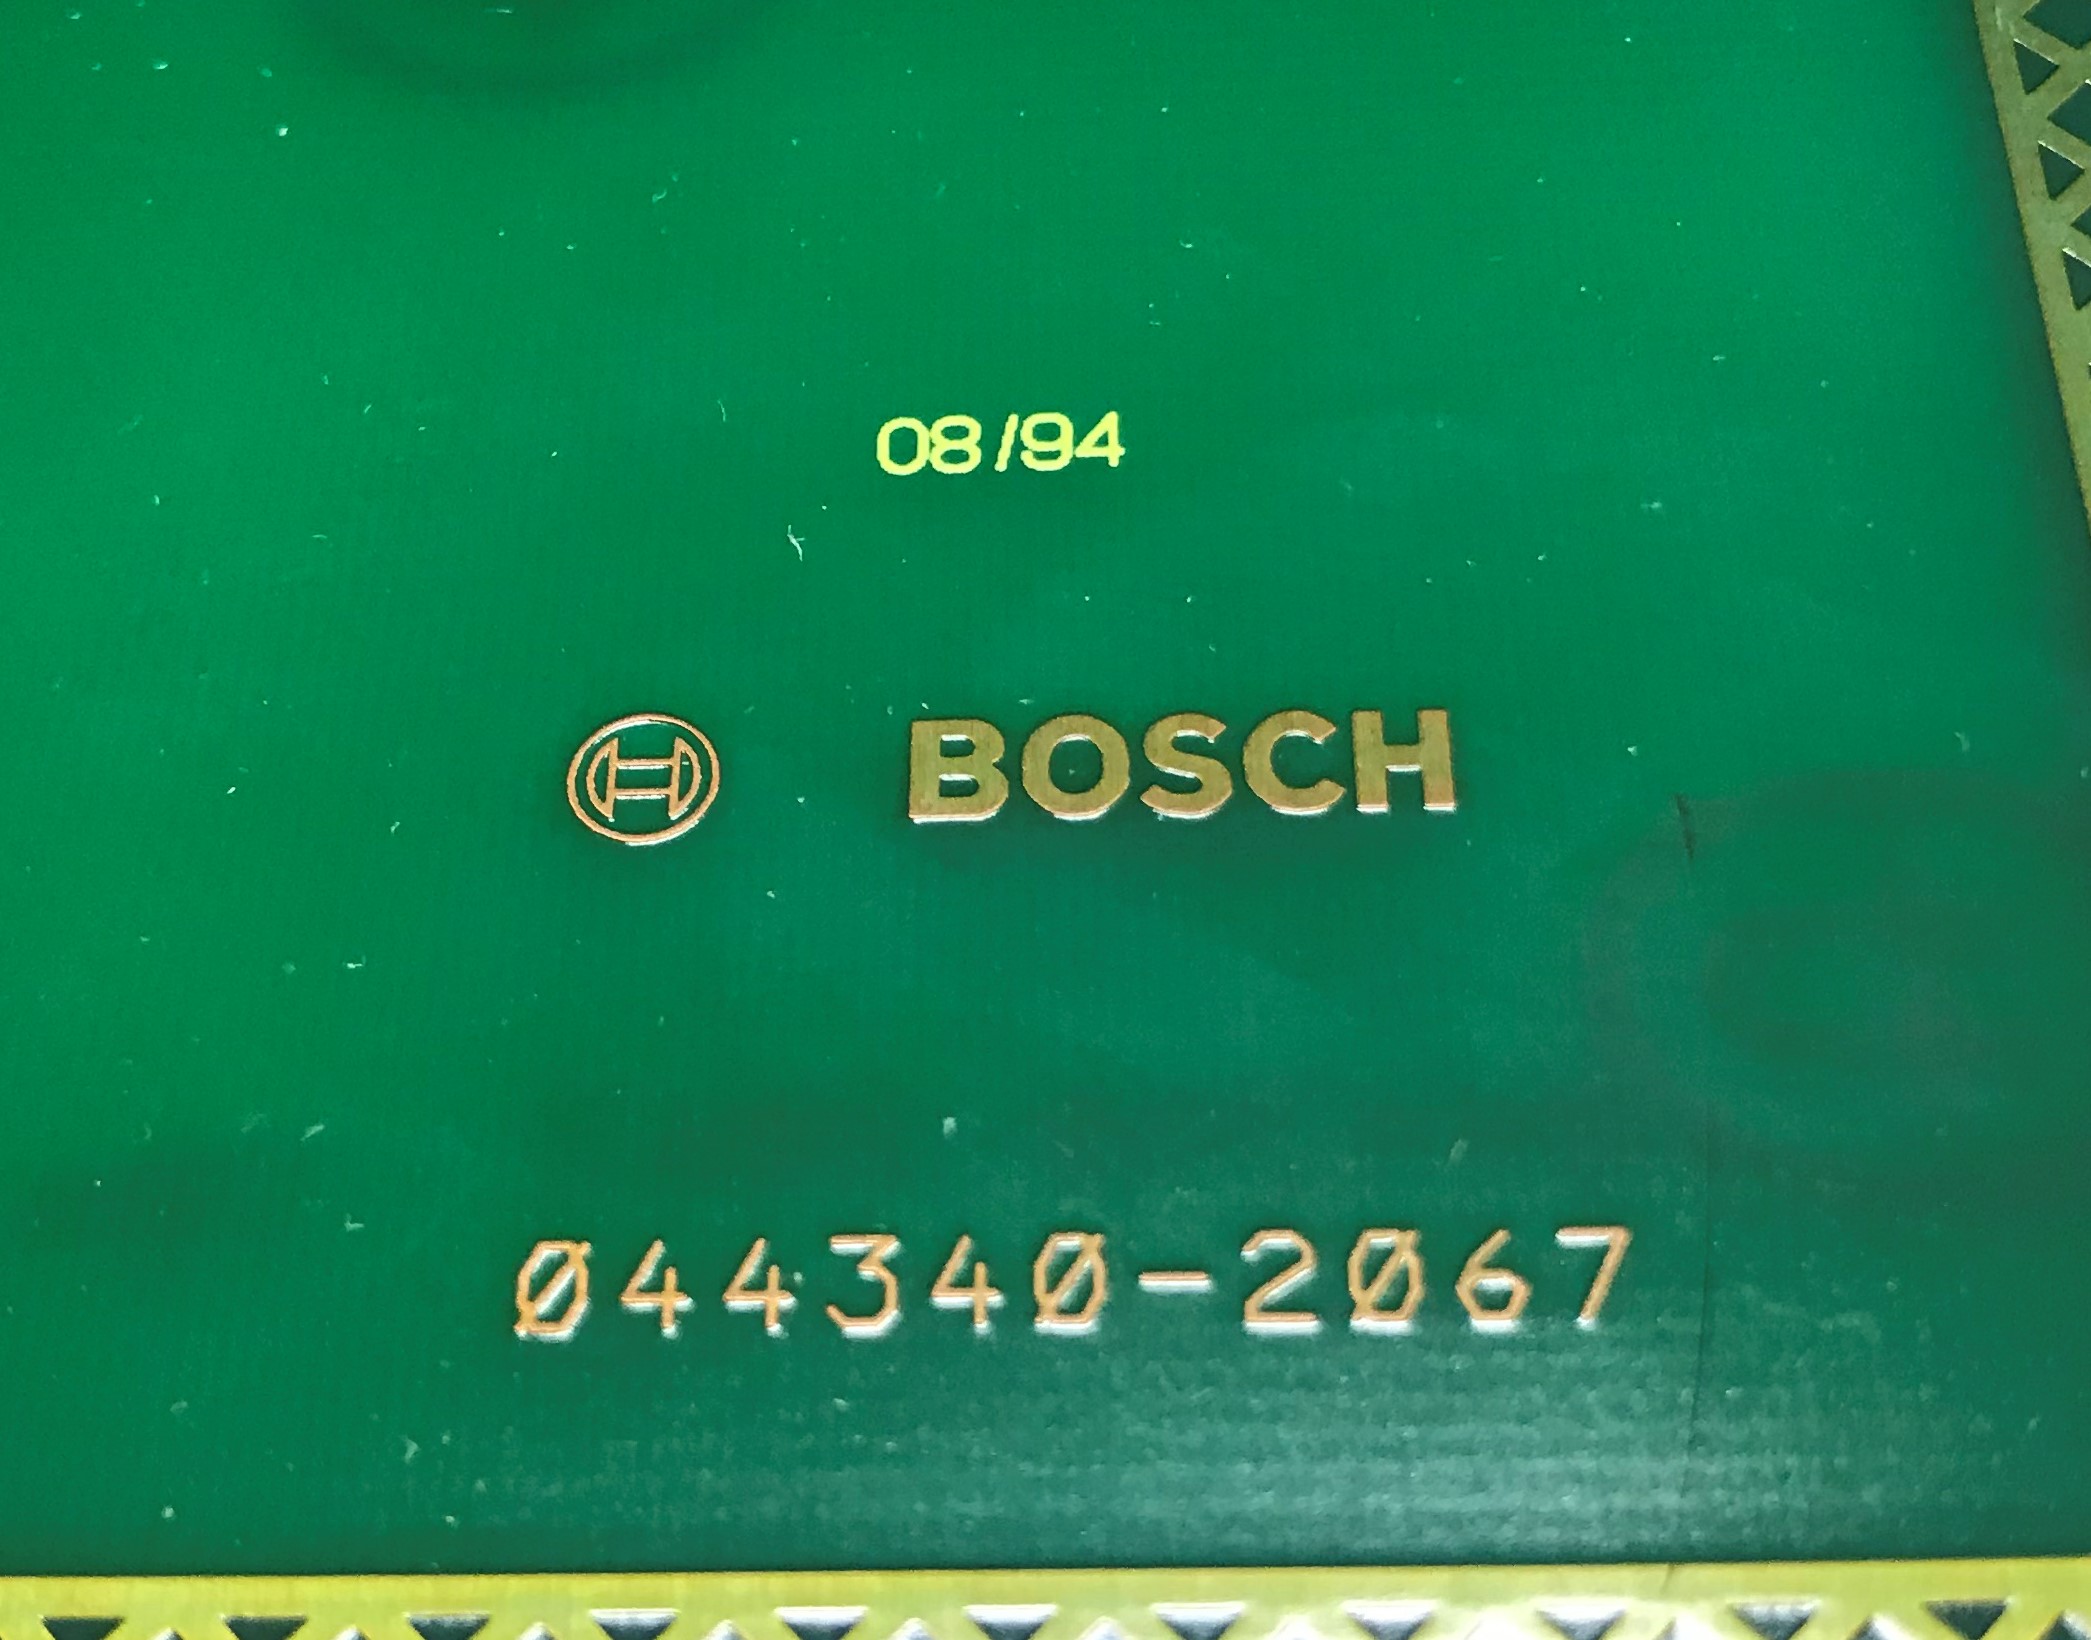 Bosch CNC NC PLC board 1070048499-113 044340-2067